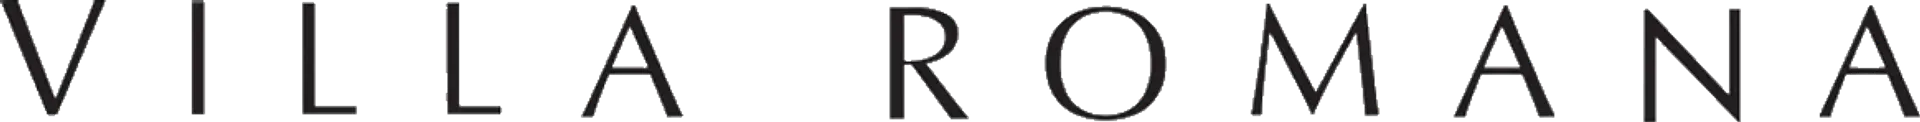 VILLA ROMANA logo de catálogo